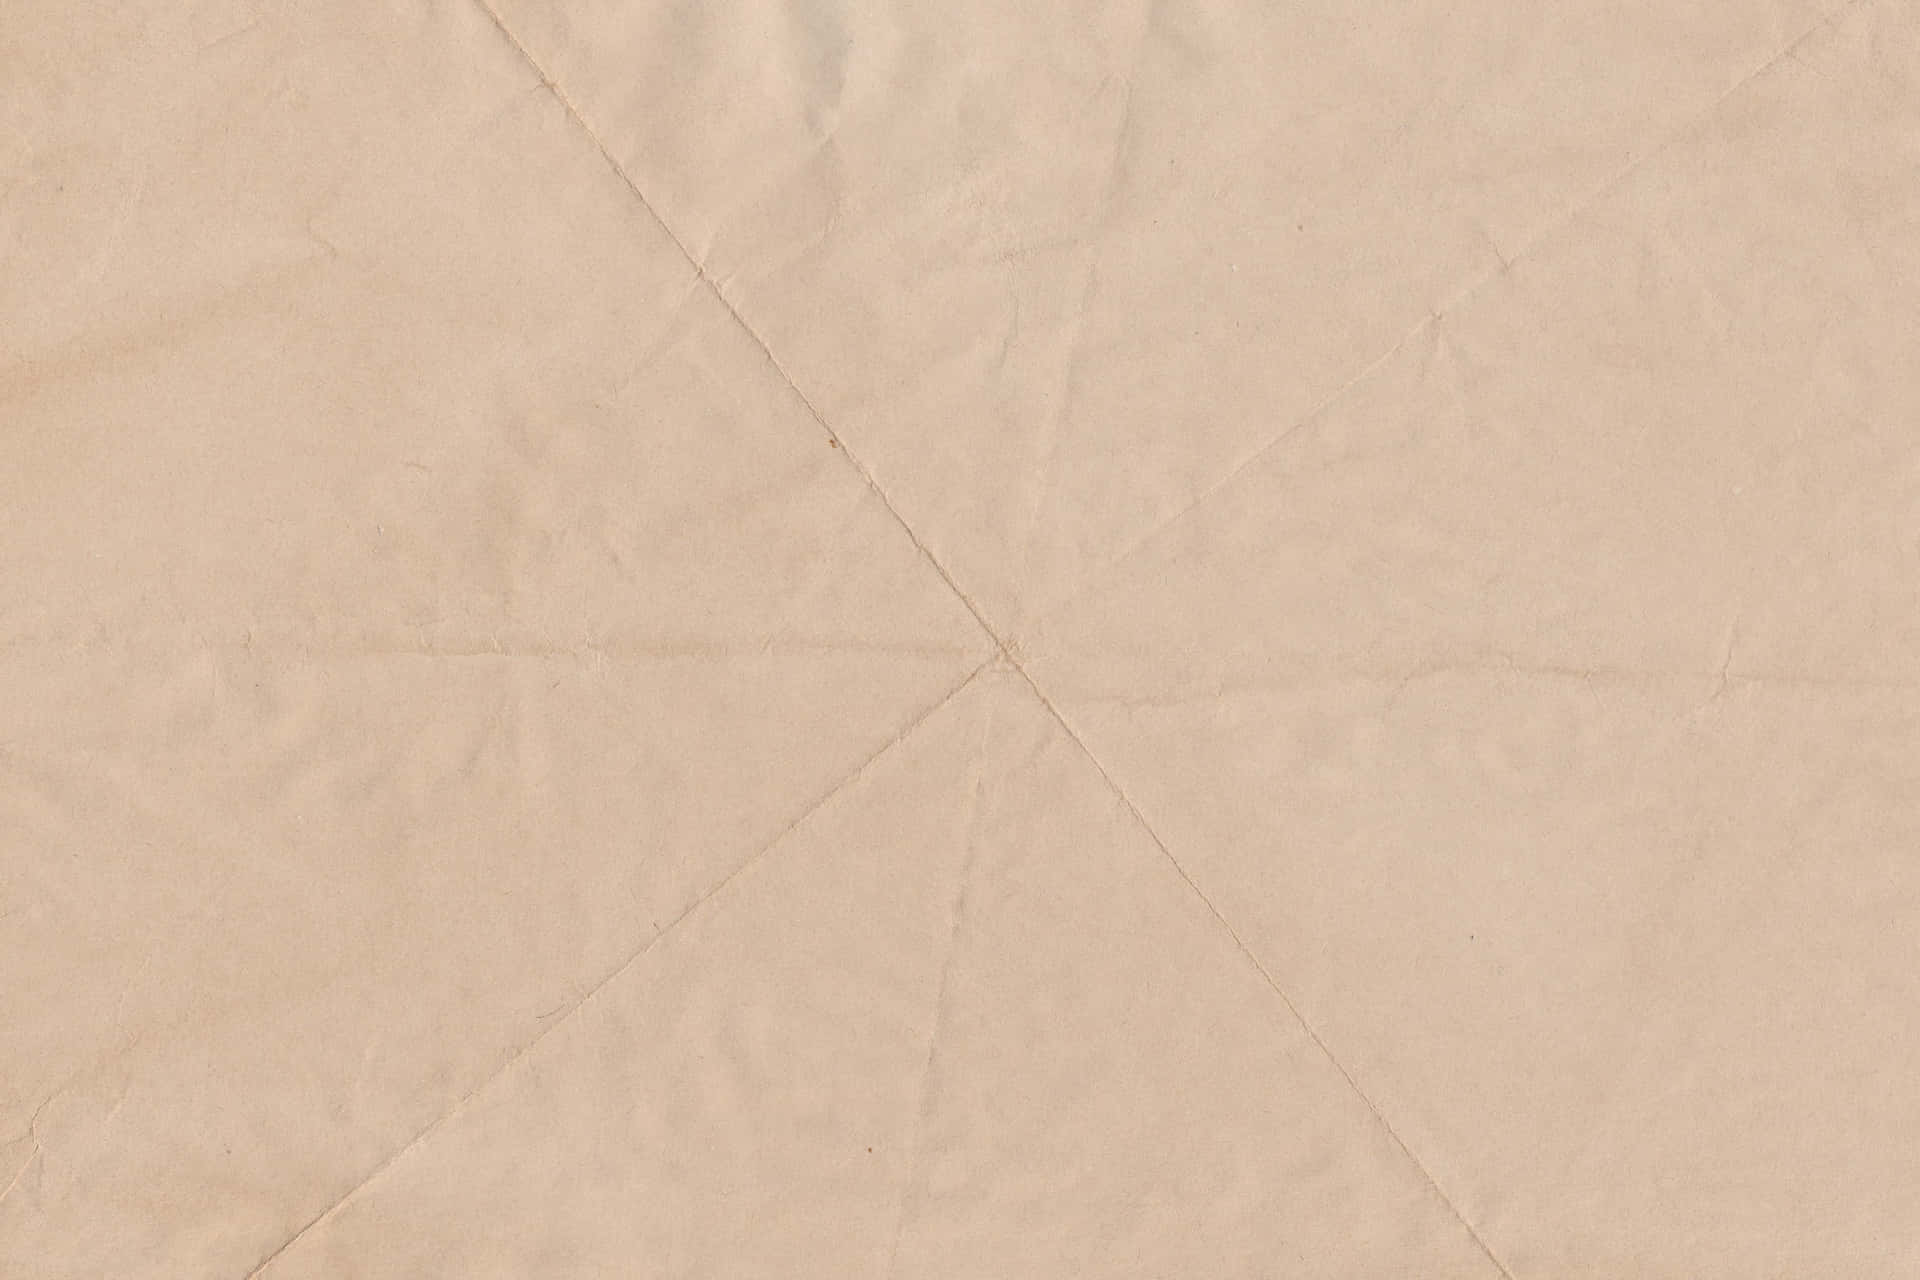 Baggrund af Pergament med linjemønstre